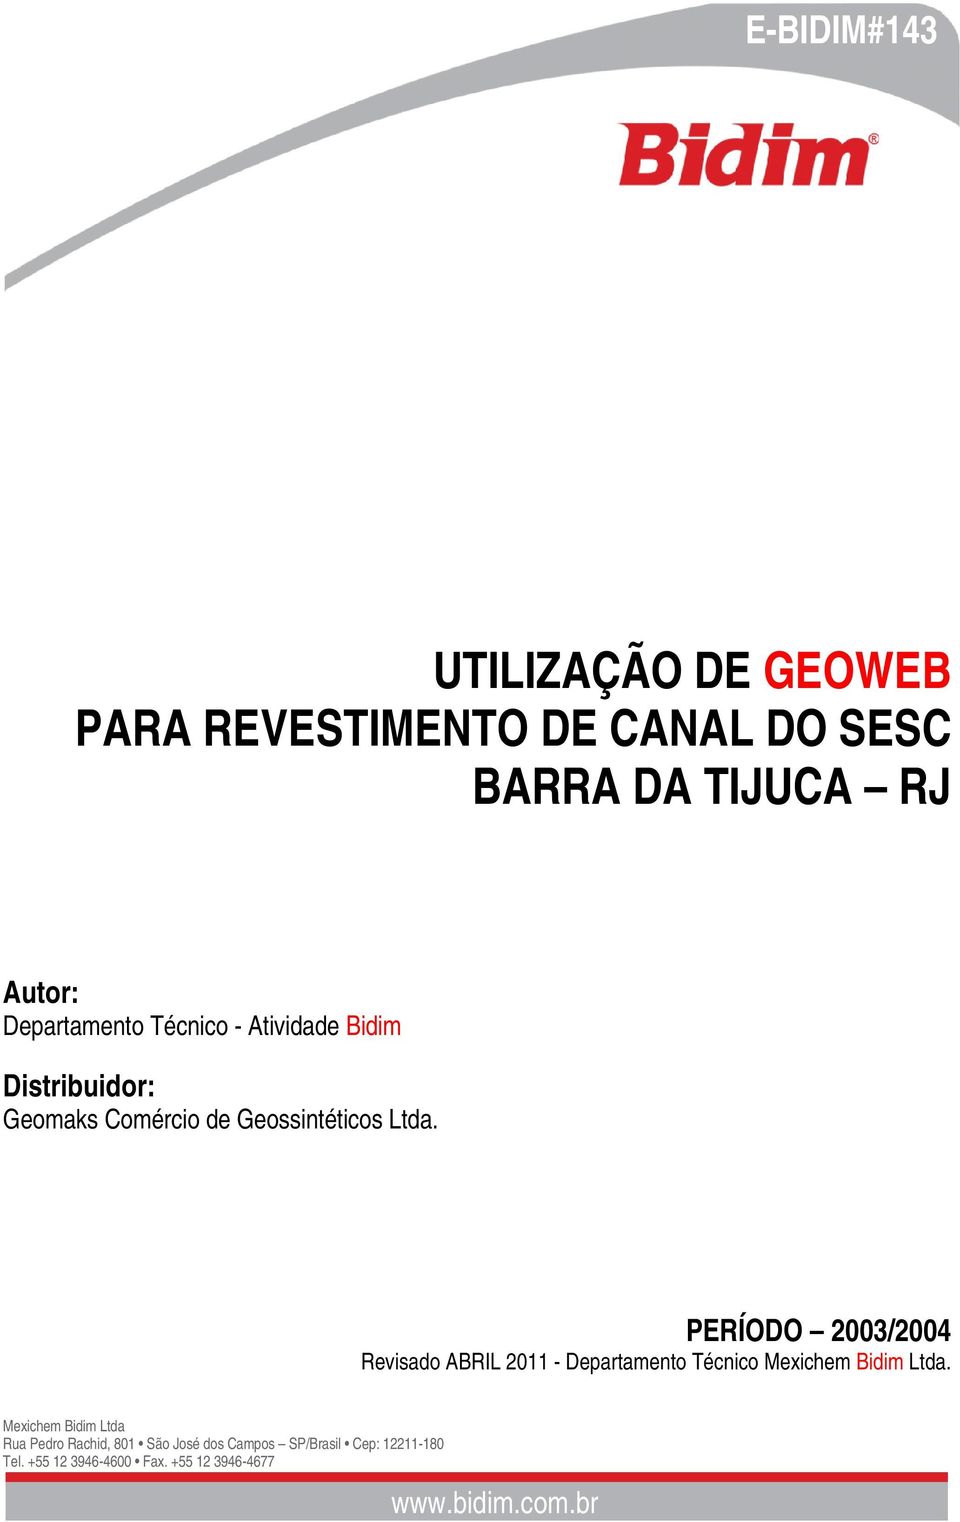 Bidim Distribuidor: Geomaks Comércio de Geossintéticos Ltda.